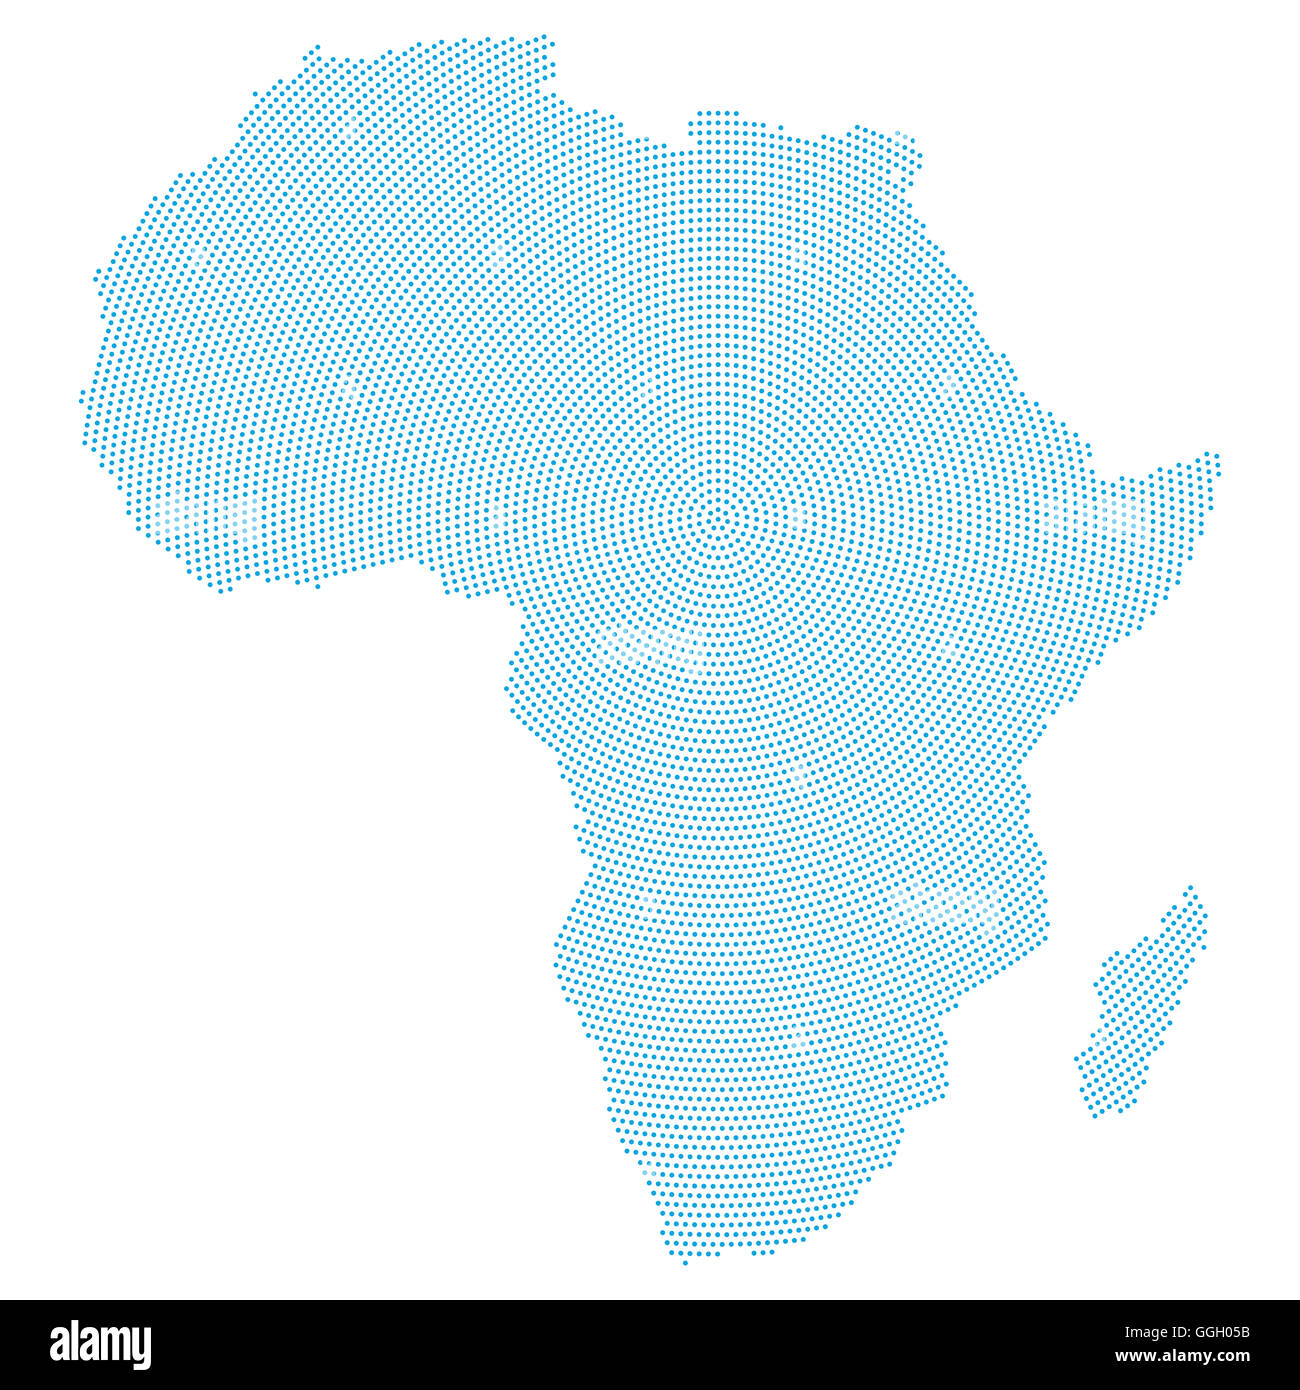 Mapa de África del patrón de puntos radiales. Los puntos azules que va desde el centro hacia afuera y forman la silueta del continente africano. Foto de stock